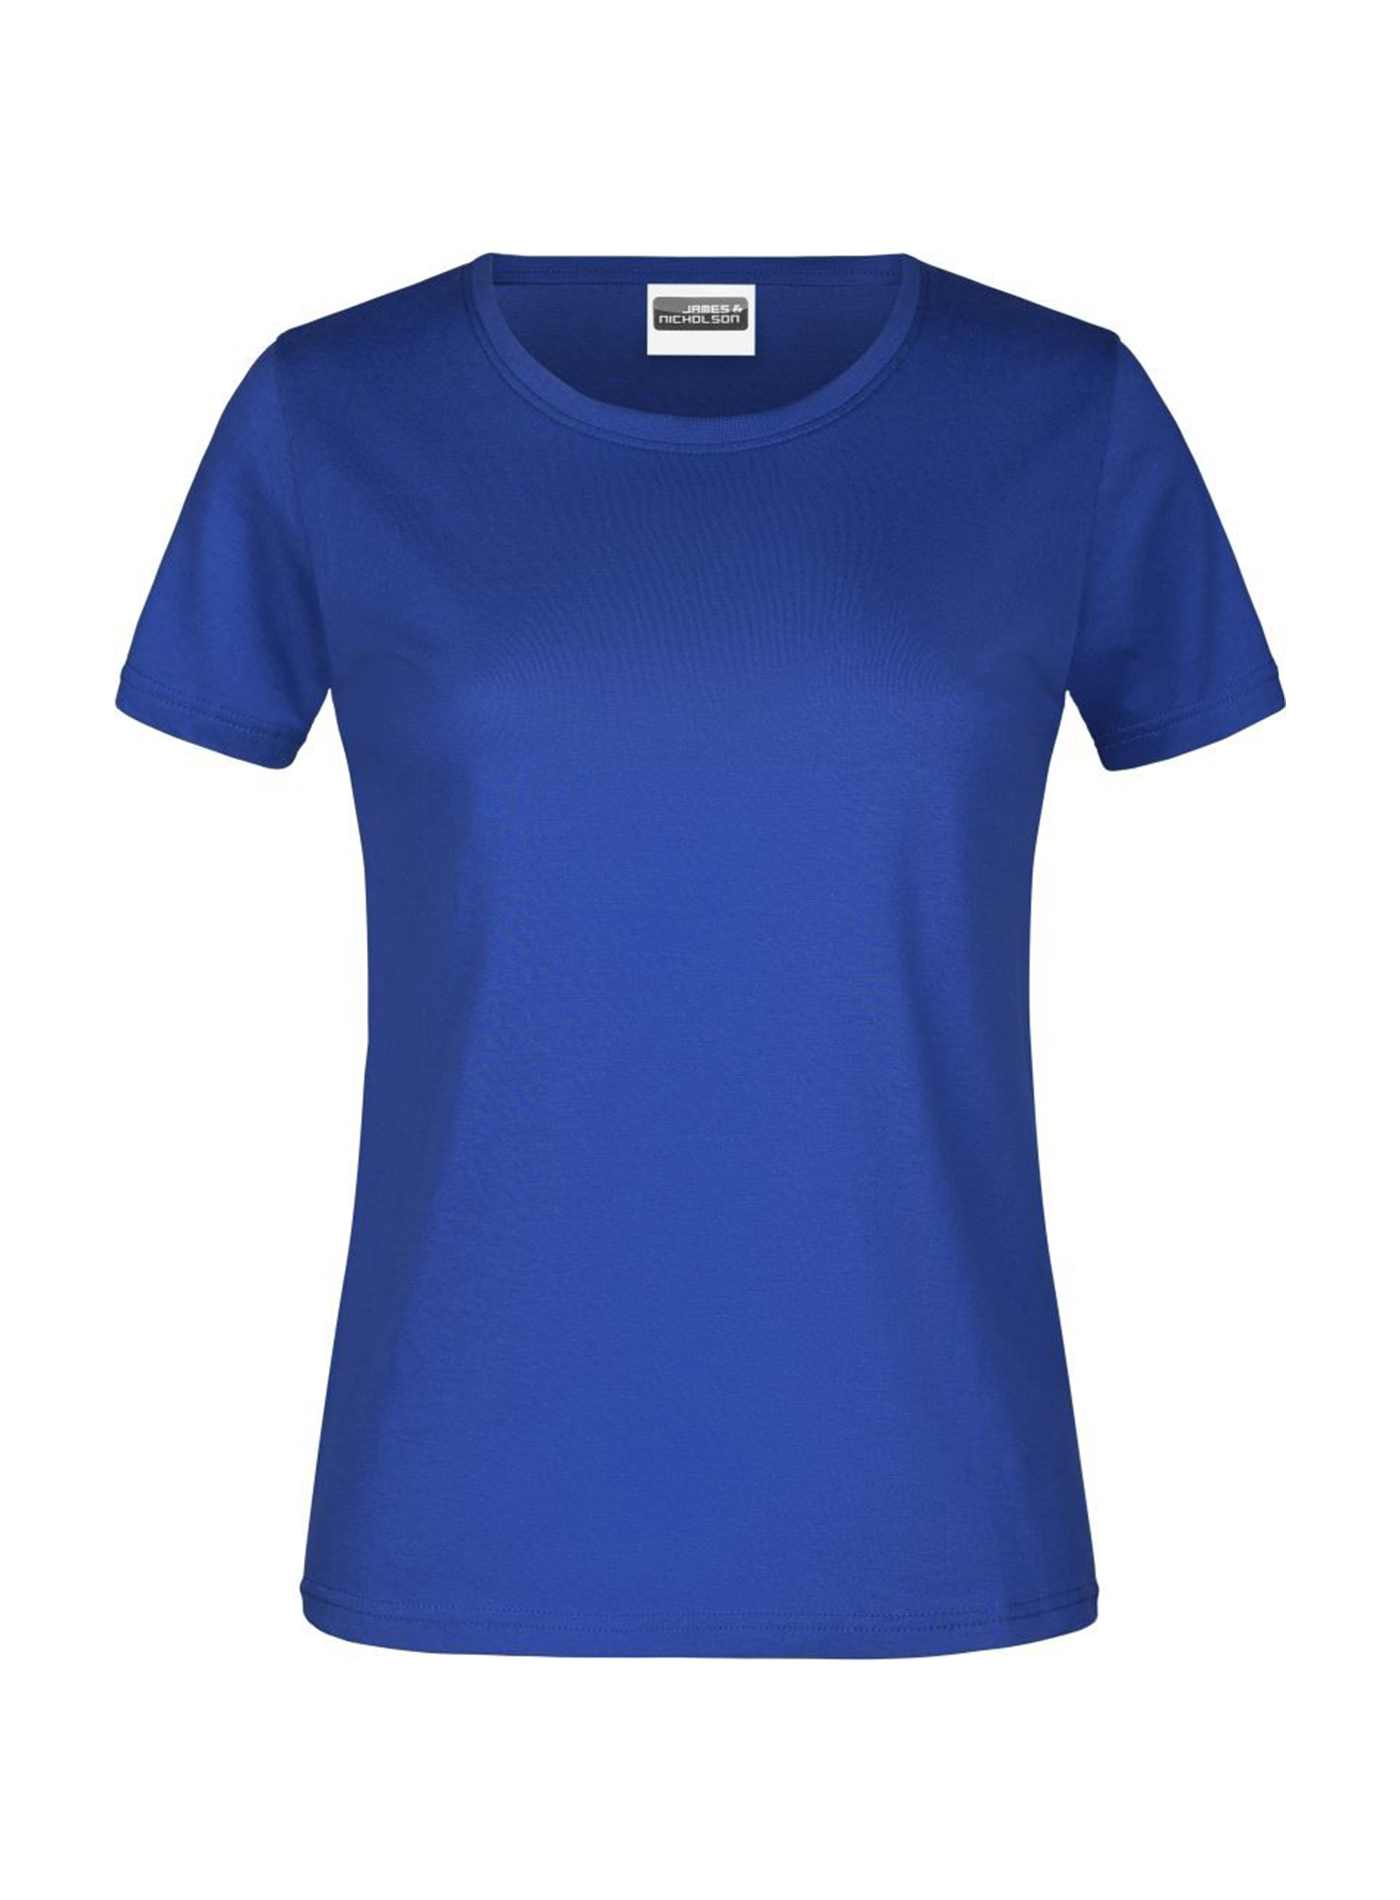 Dámské tričko James & Nicholson basic - Královská modrá L